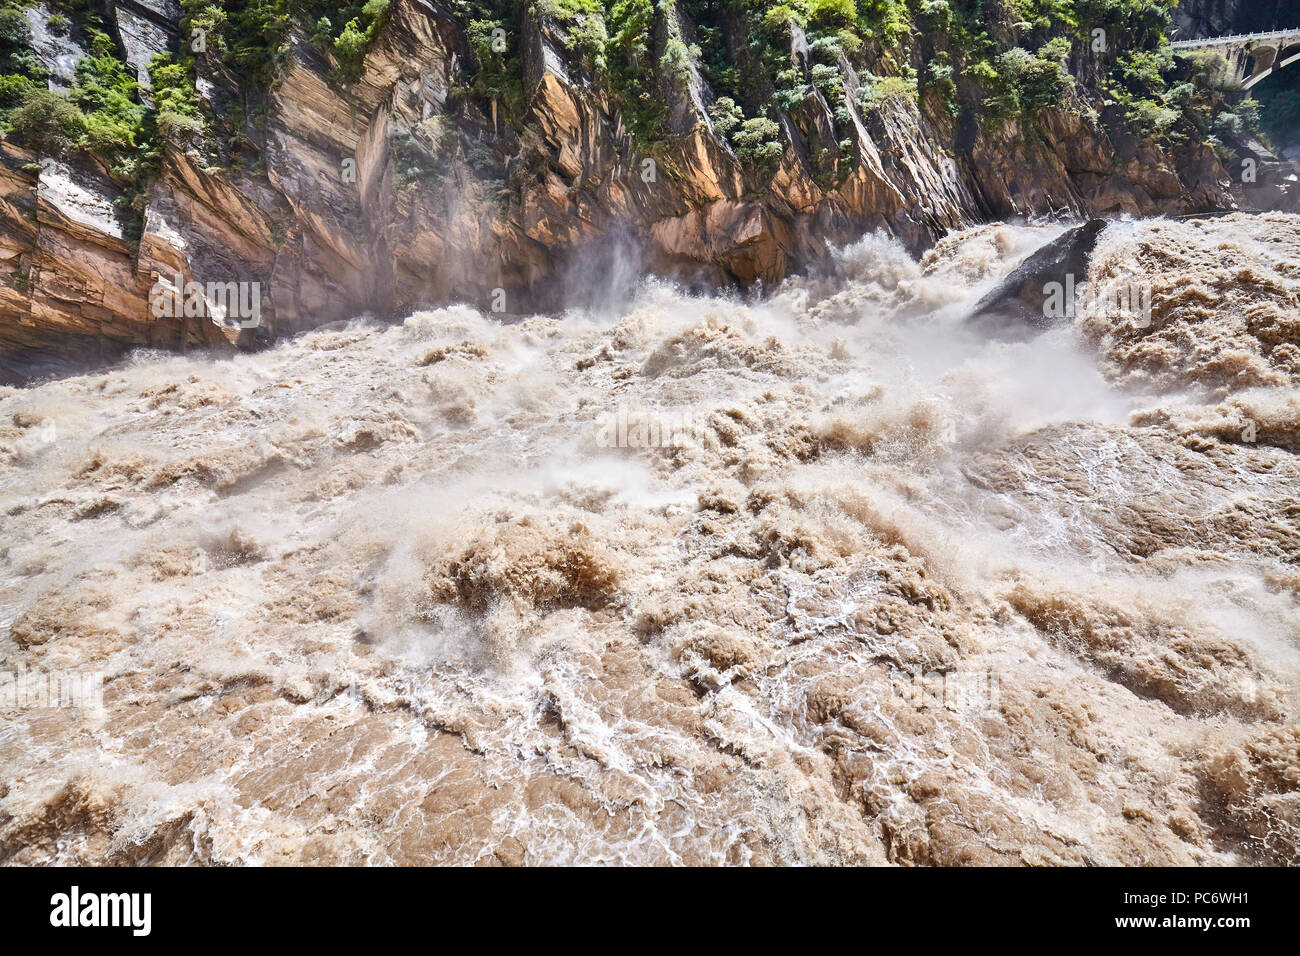 La montagne, la rivière boueuse turbulent la Gorge du tigre bondissant, la Chine. Banque D'Images